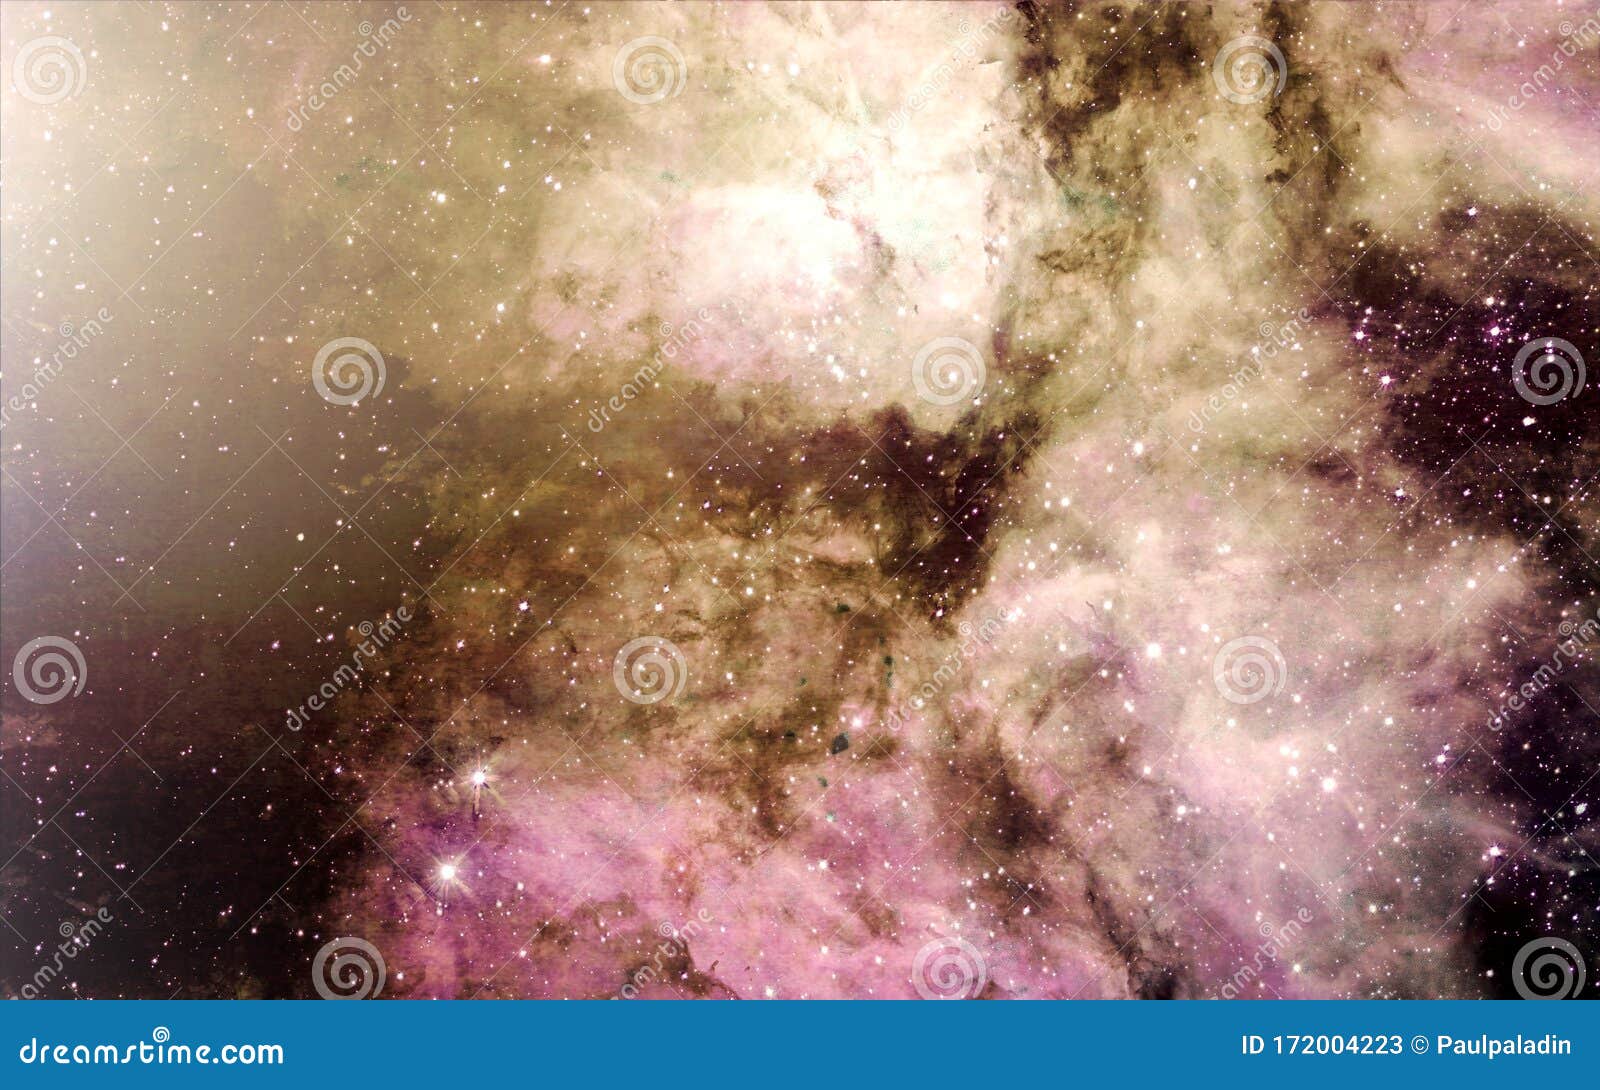 stars, dust and gas nebula in a far galaxy space background. stellar nursery